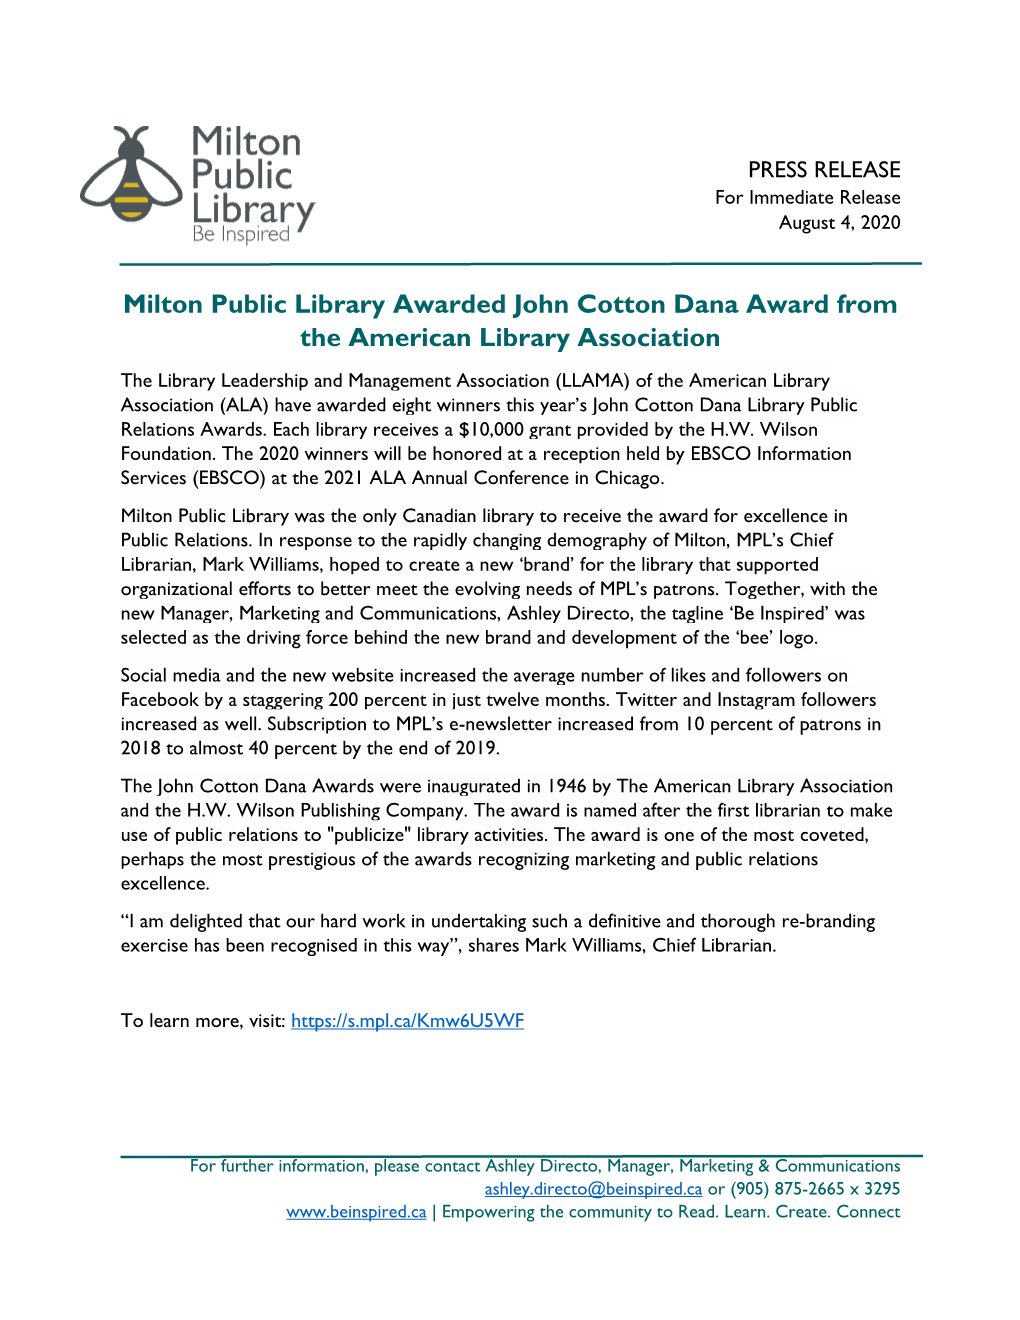 Milton Public Library Awarded John Cotton Dana Award from The